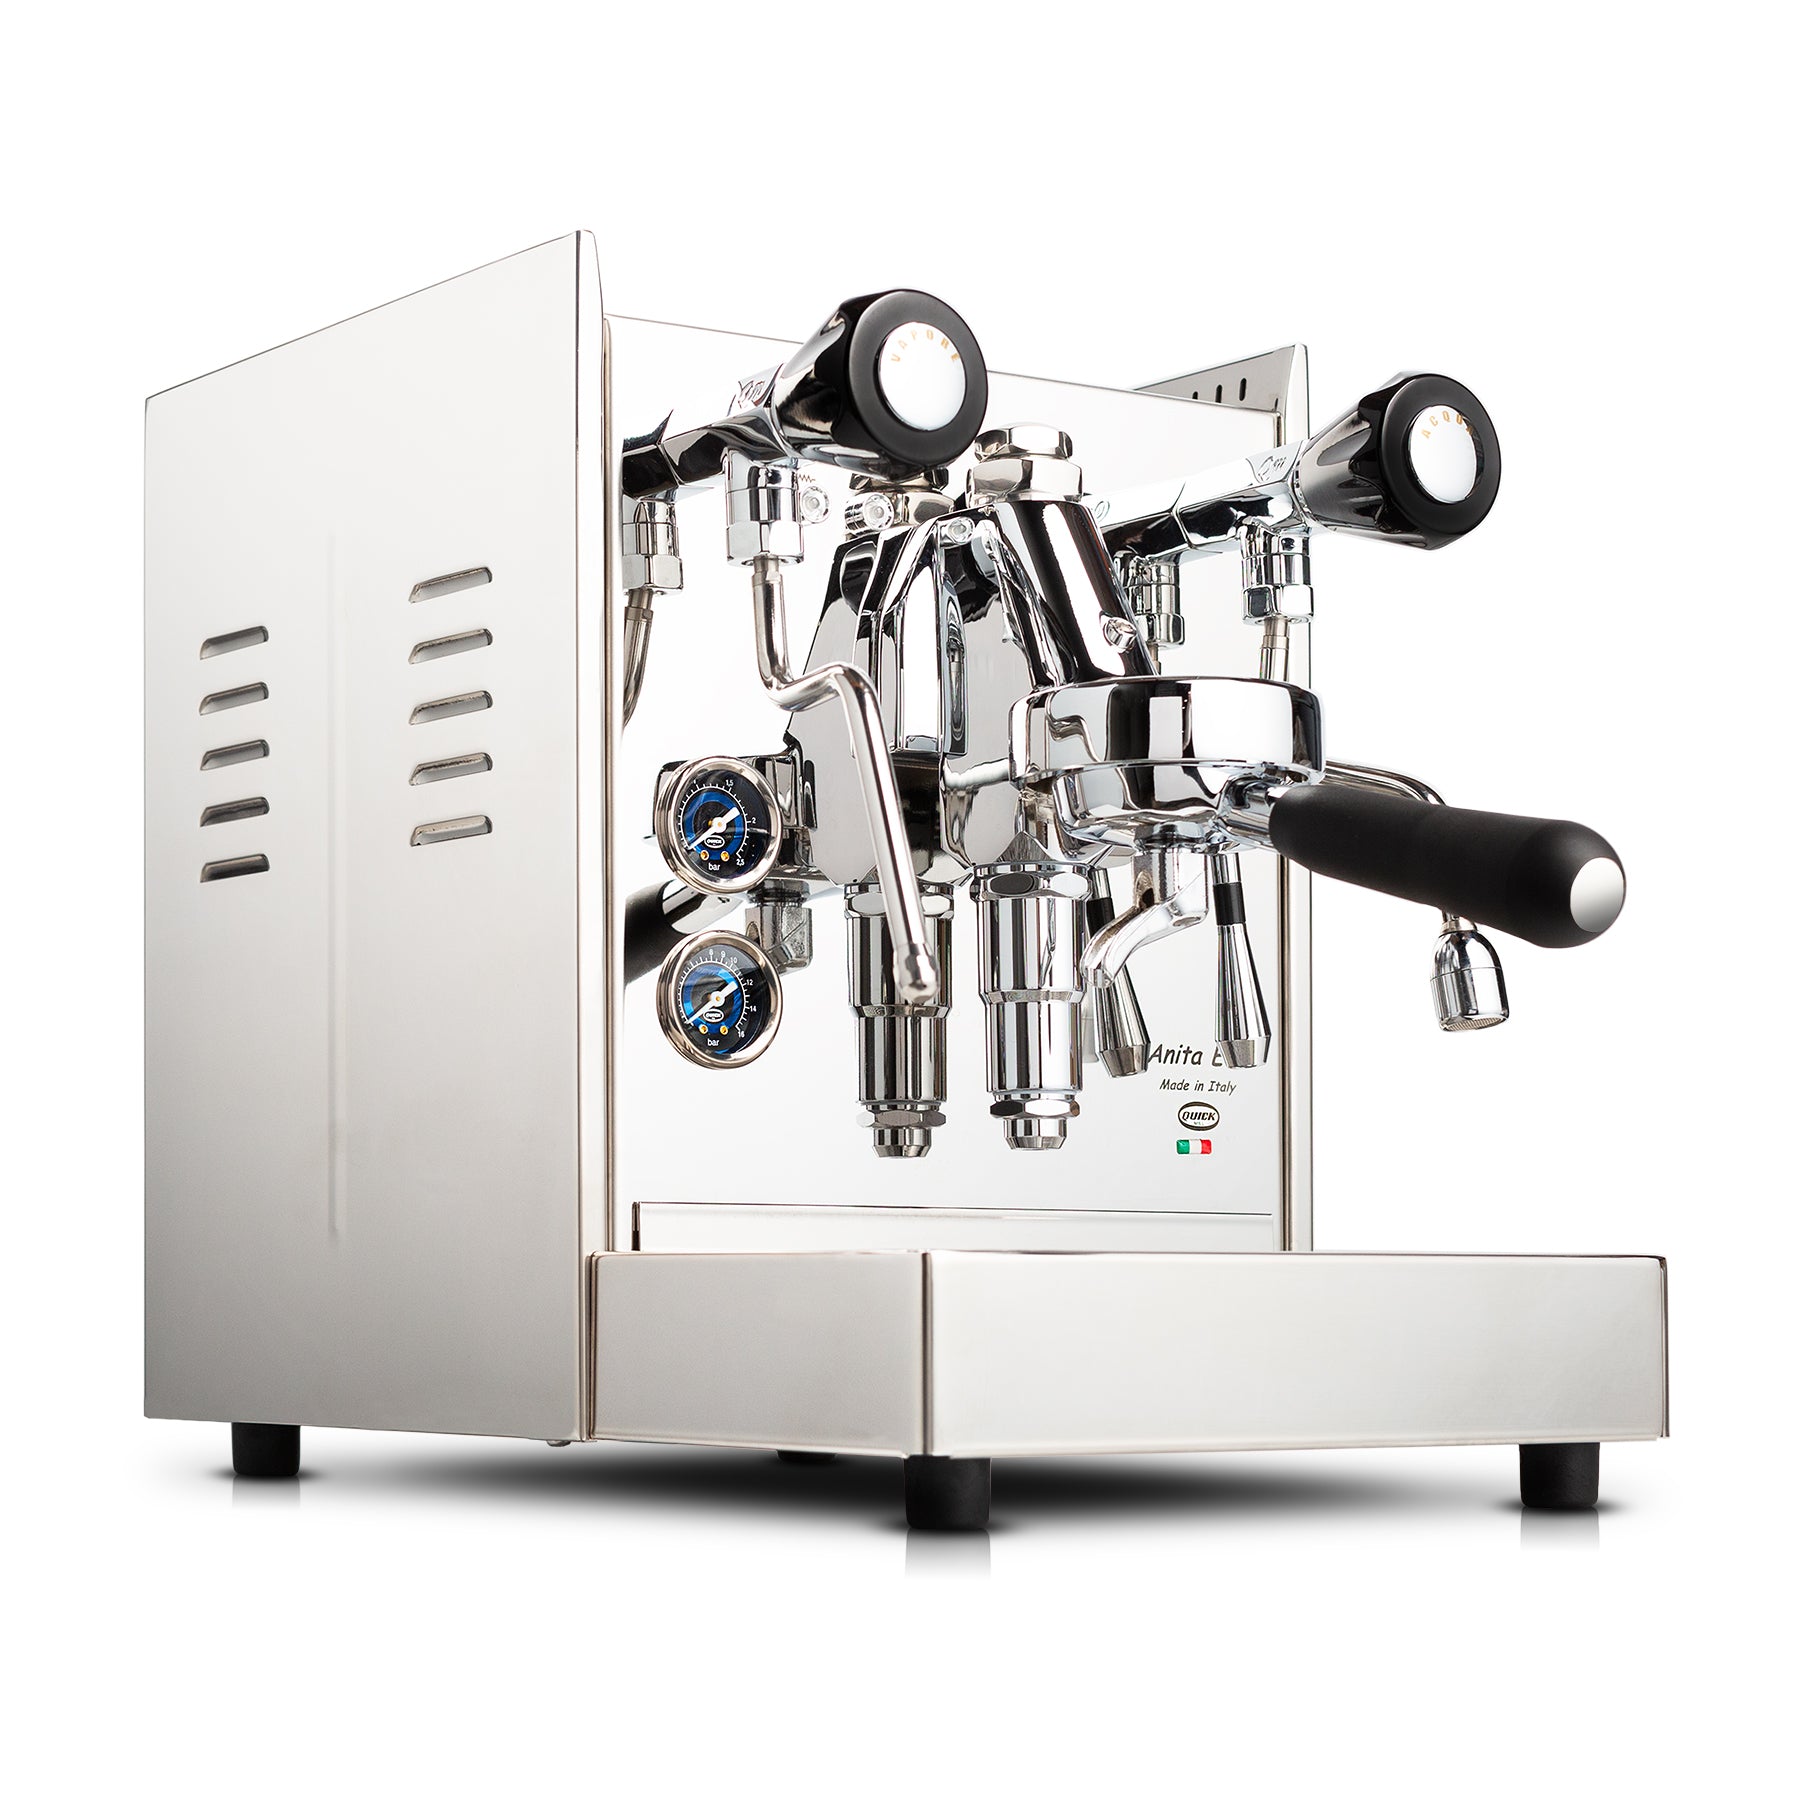 Quick Mill Anita Evo Espresso Machine – Chris' Coffee